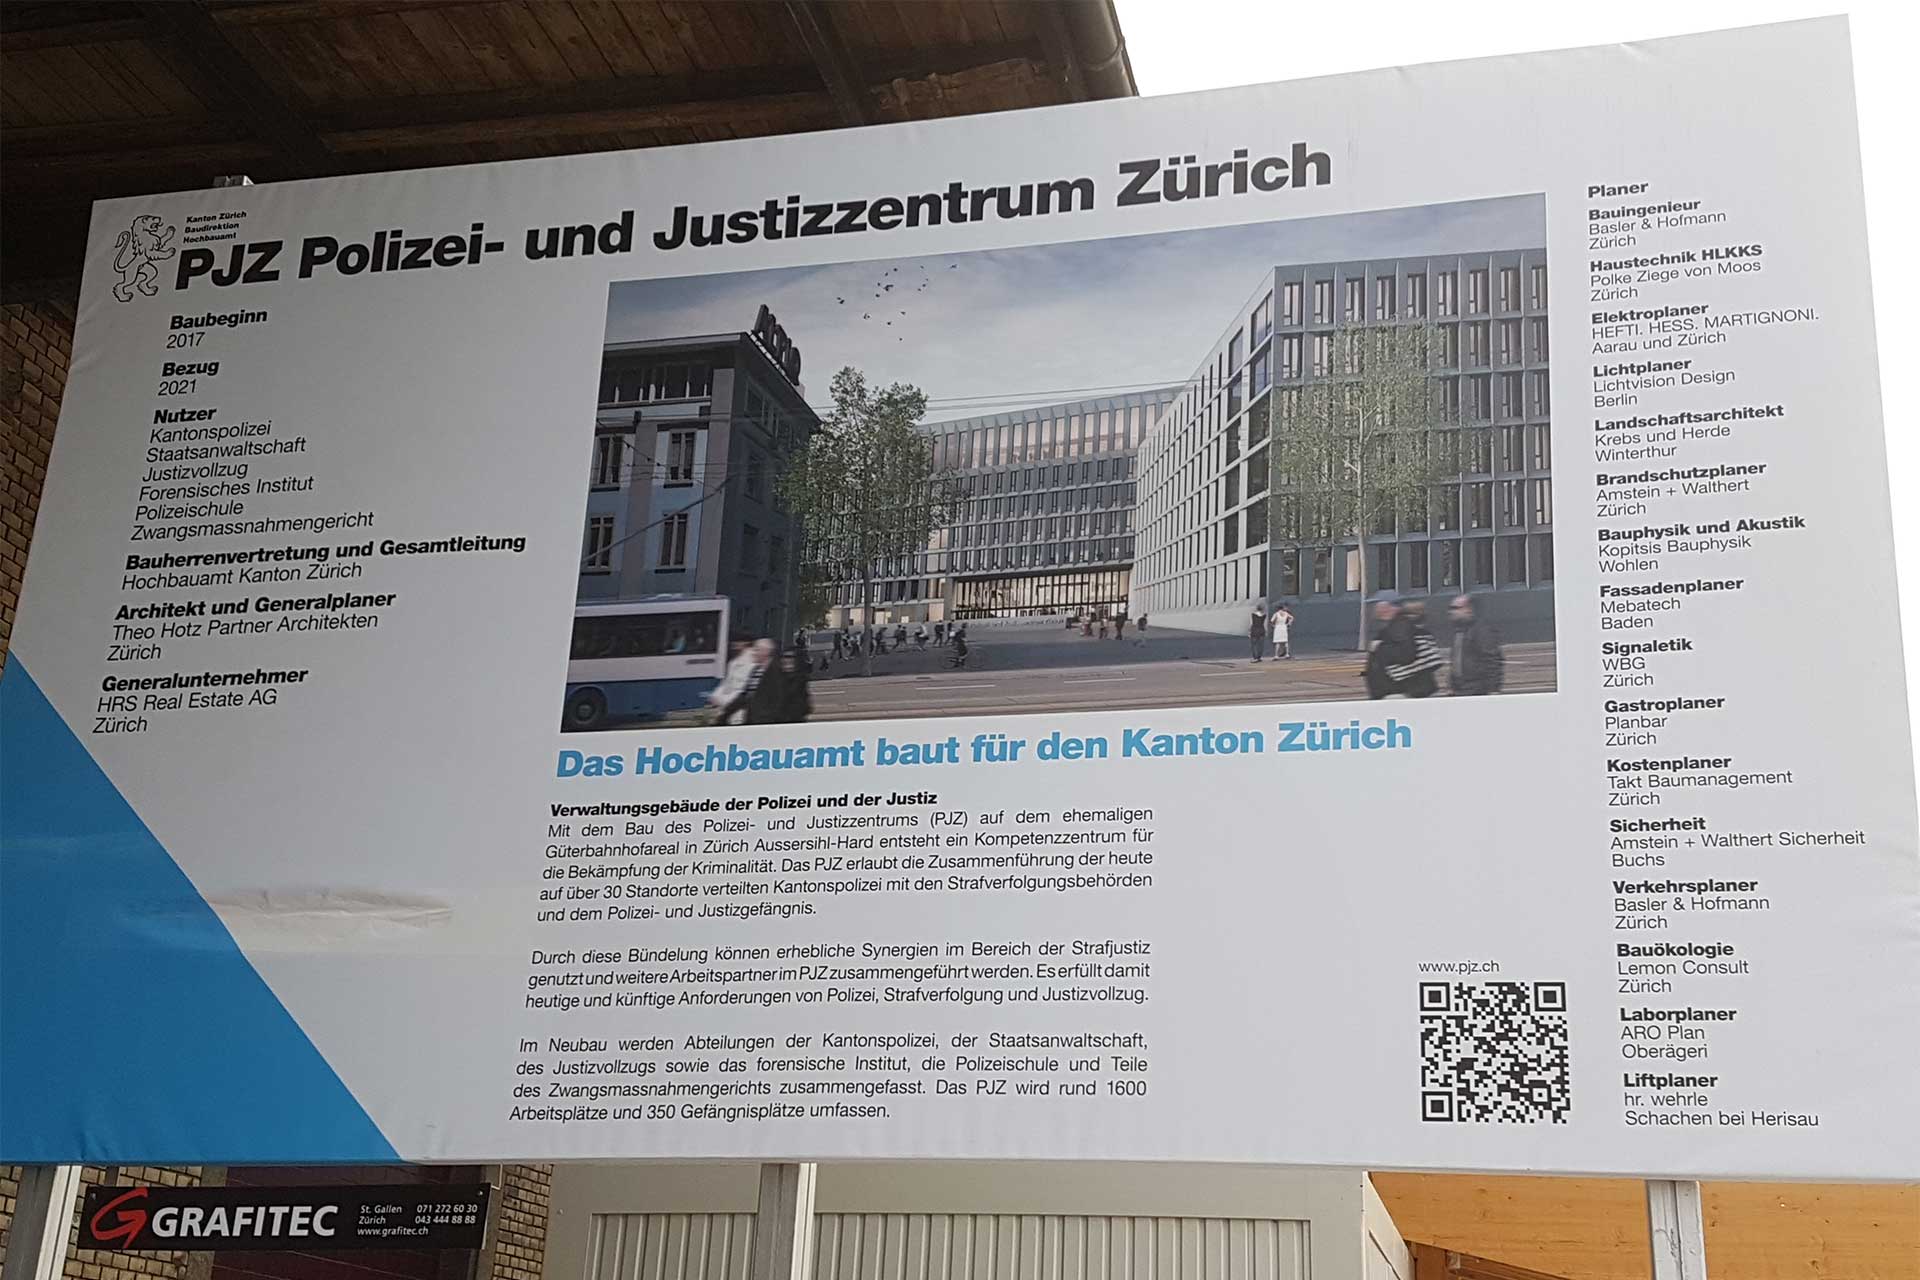 ochsner-baureal GmbH, Referenzen, Kanton Zürich, PJZ Polizei -und Justizzentrum Zürich